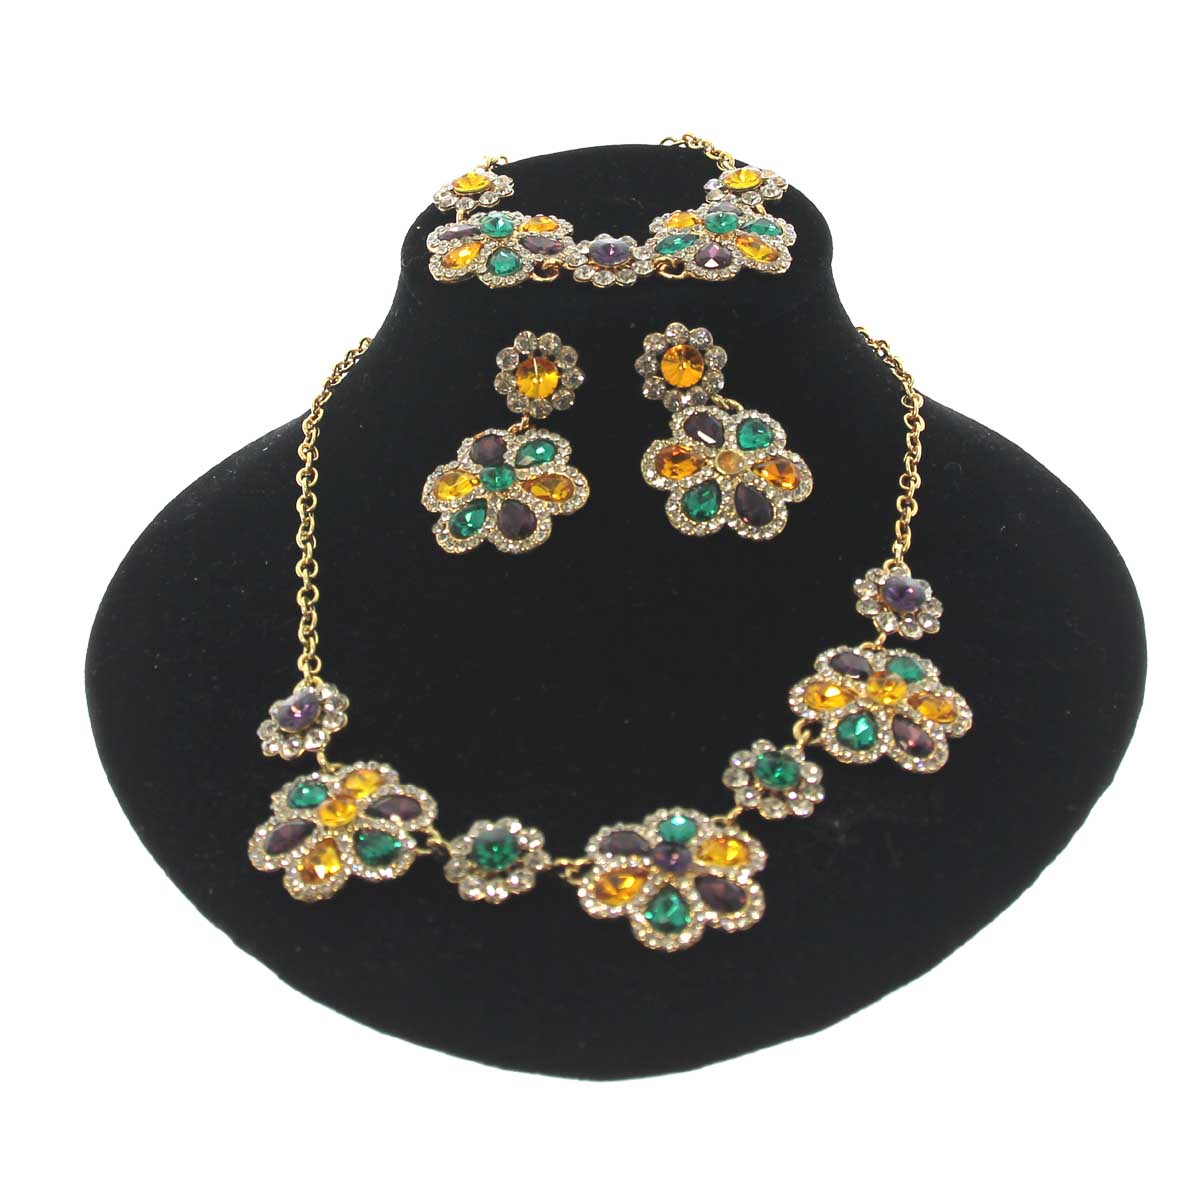 Mardi Gras Floral Gem Necklace, Earring, and Bracelet set